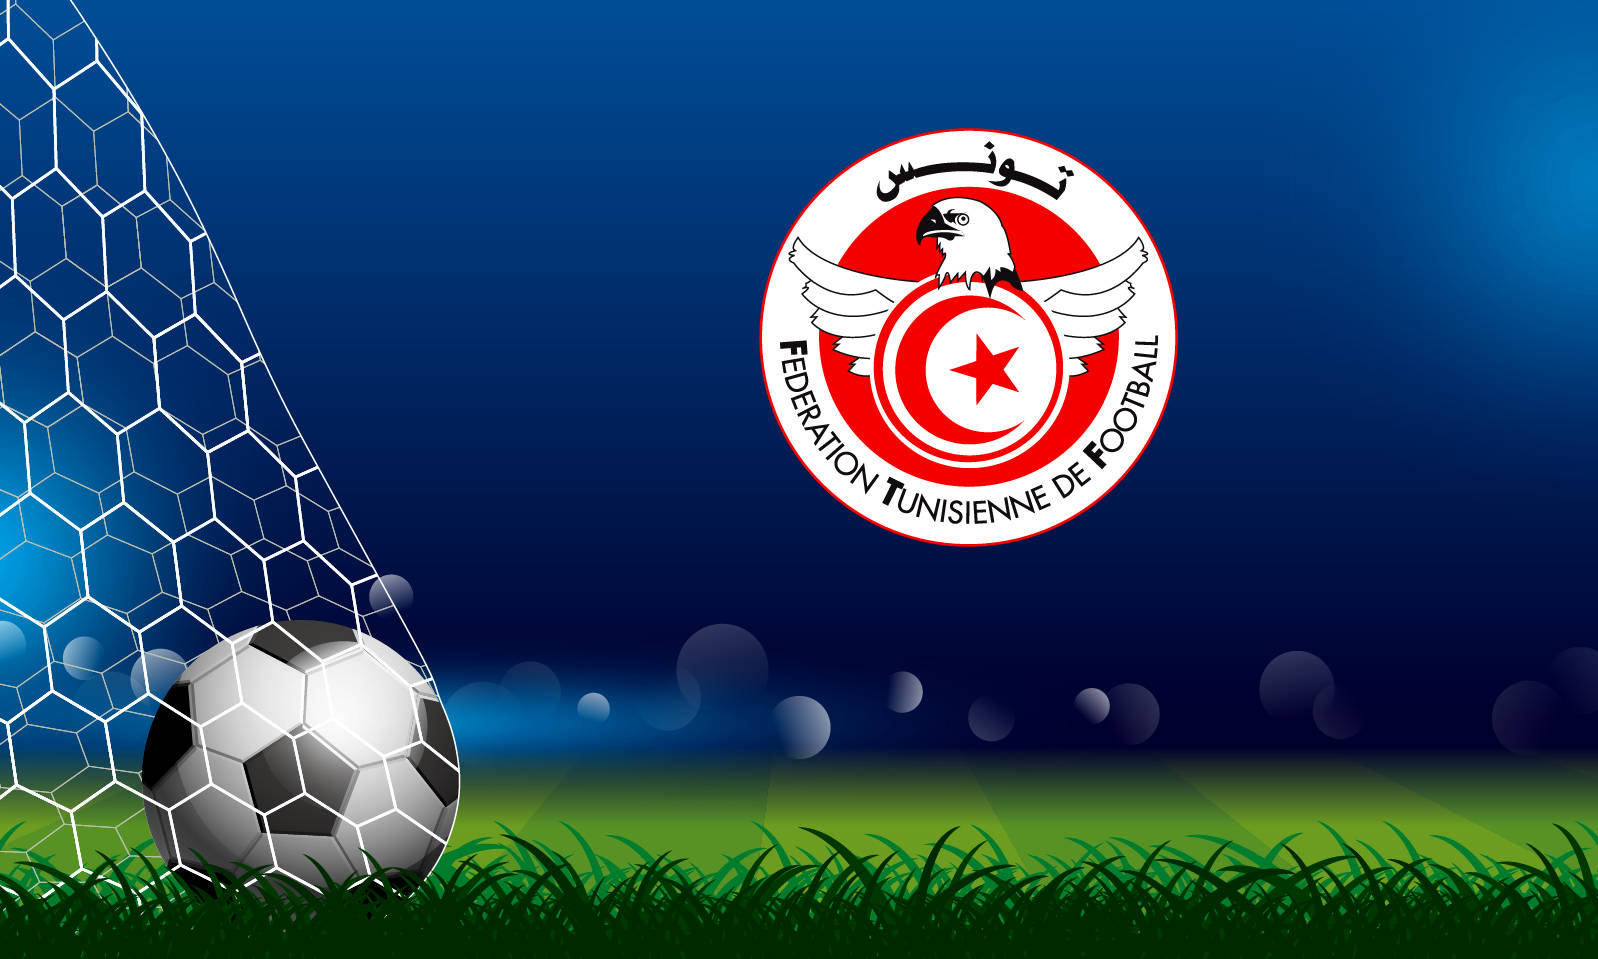 Tunisia National Football Team Logo In Football Field Wallpaper